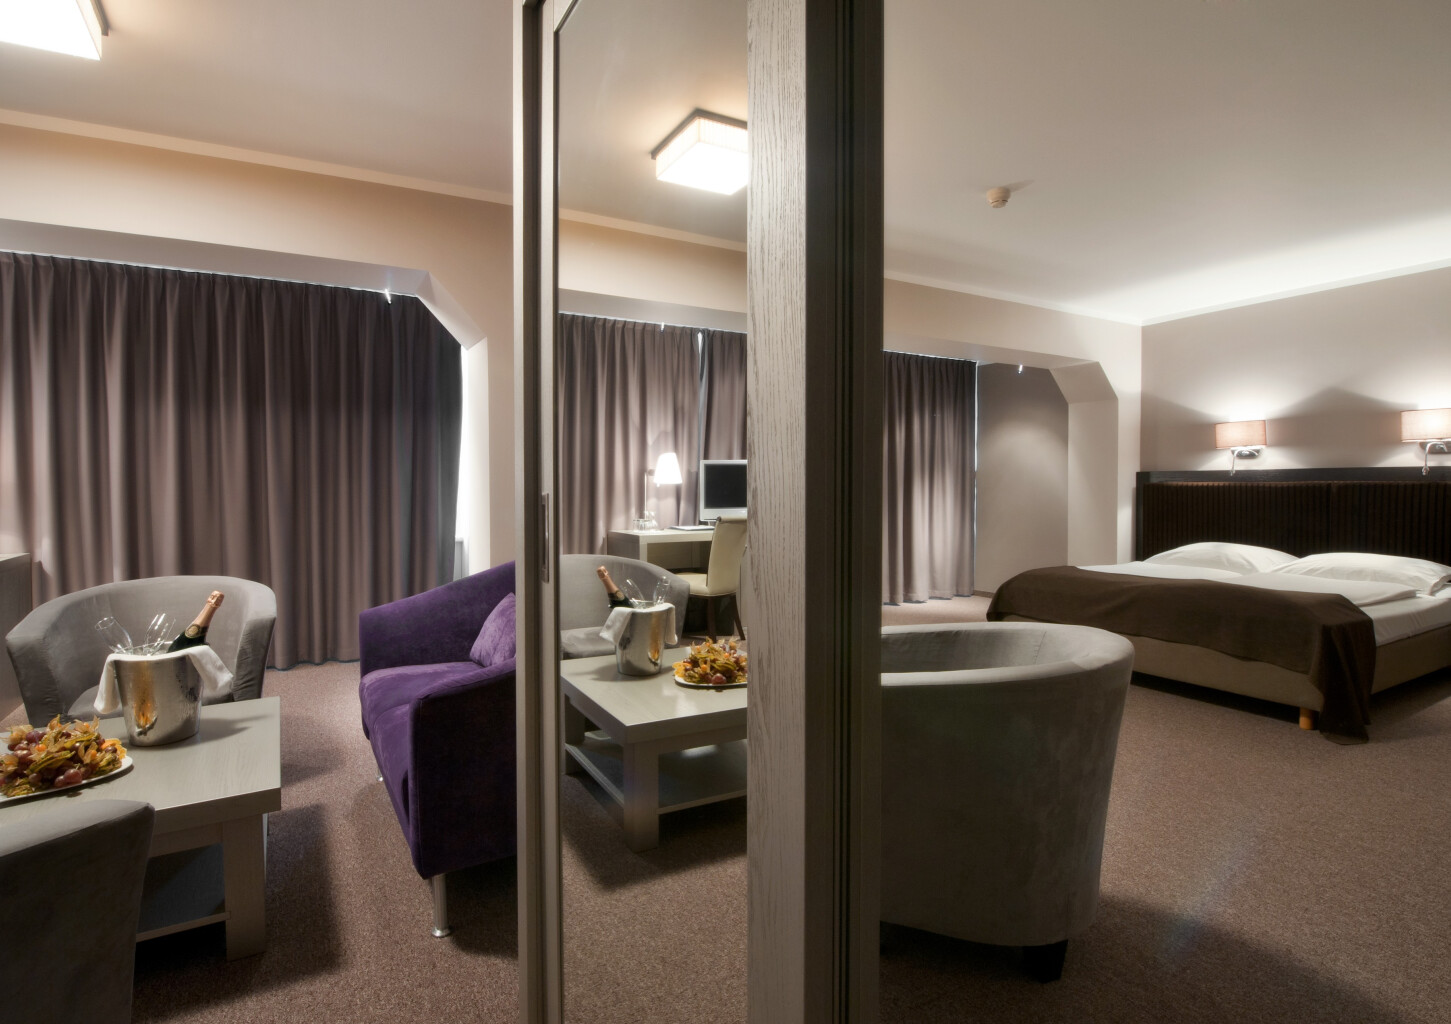 Отдых в номере Apartment Double гостиницы Bellevue Park Hotel Riga